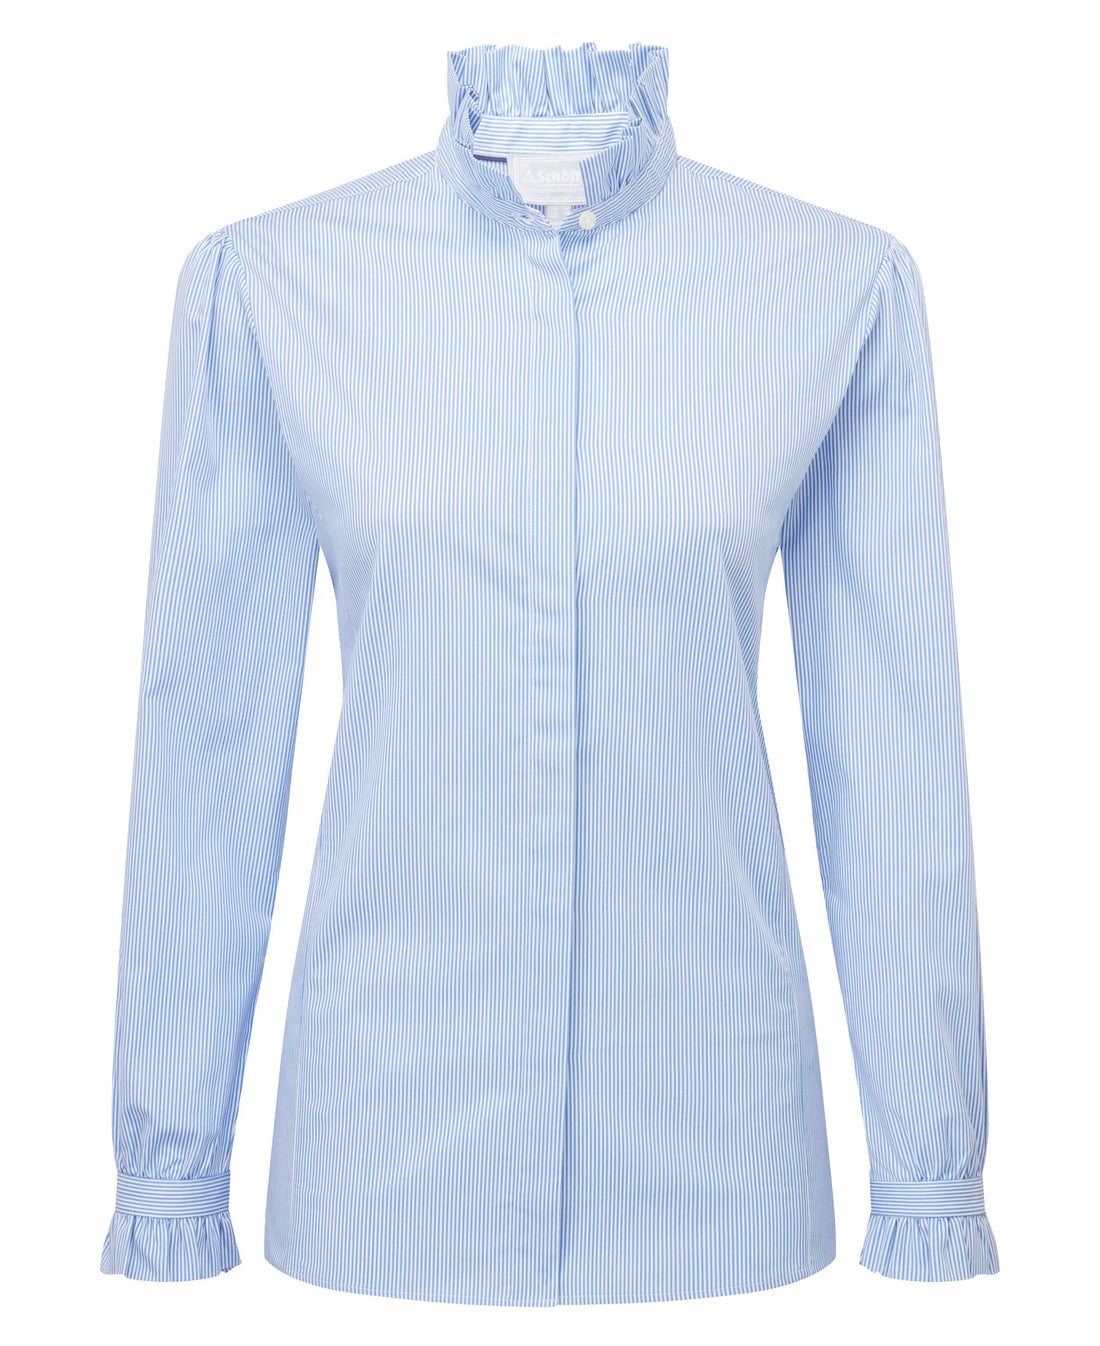 Fakenham Shirt - Light Blue Stripe